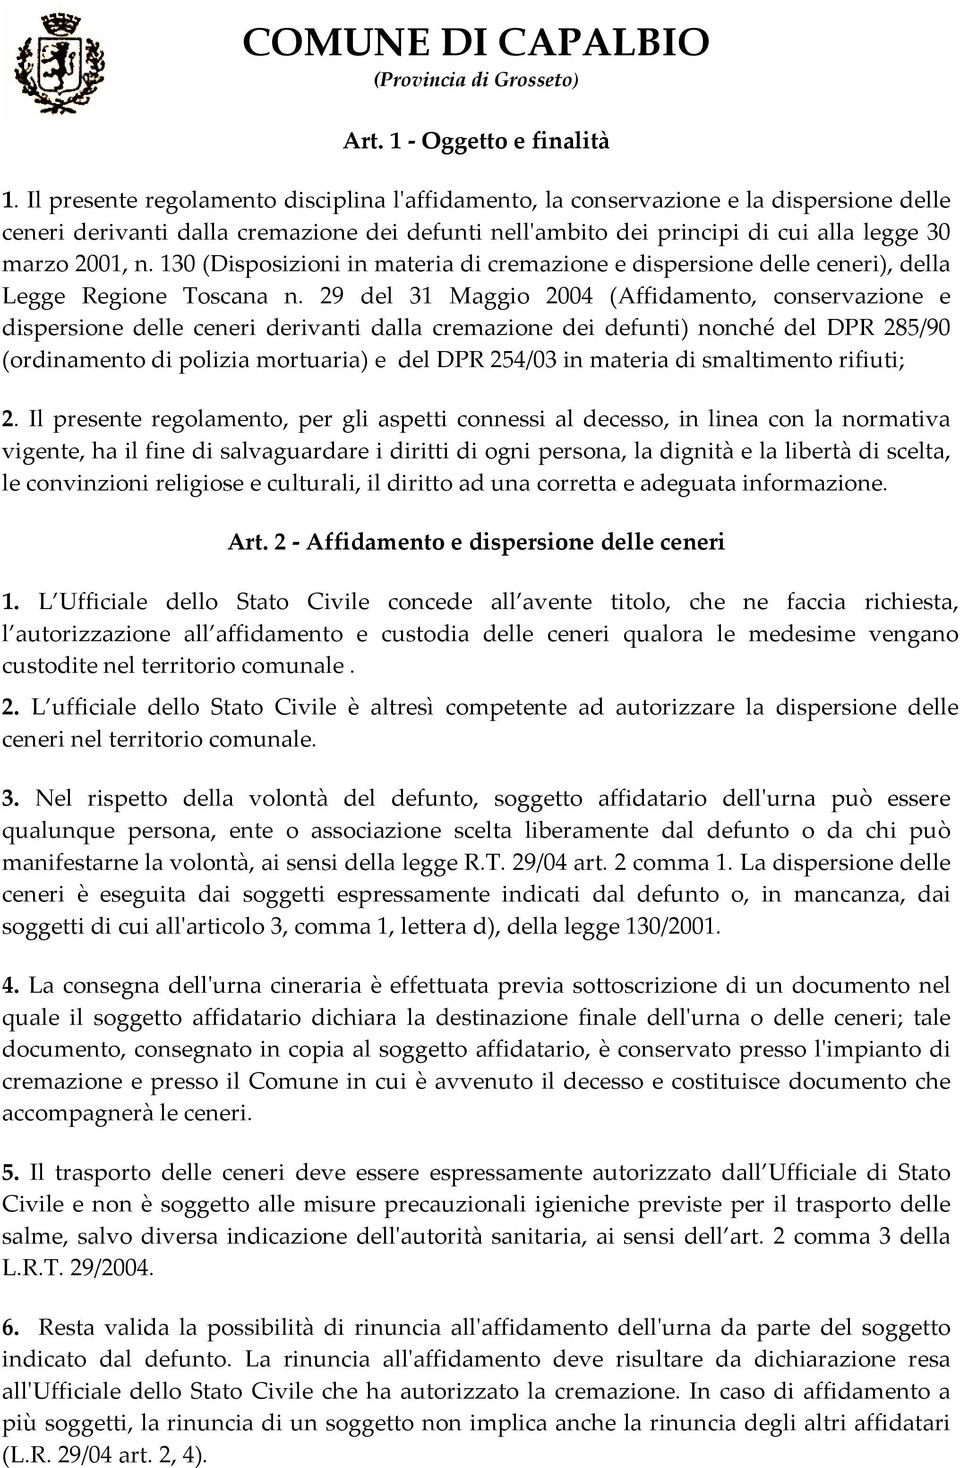 130 (Disposizioni in materia di cremazione e dispersione delle ceneri), della Legge Regione Toscana n.